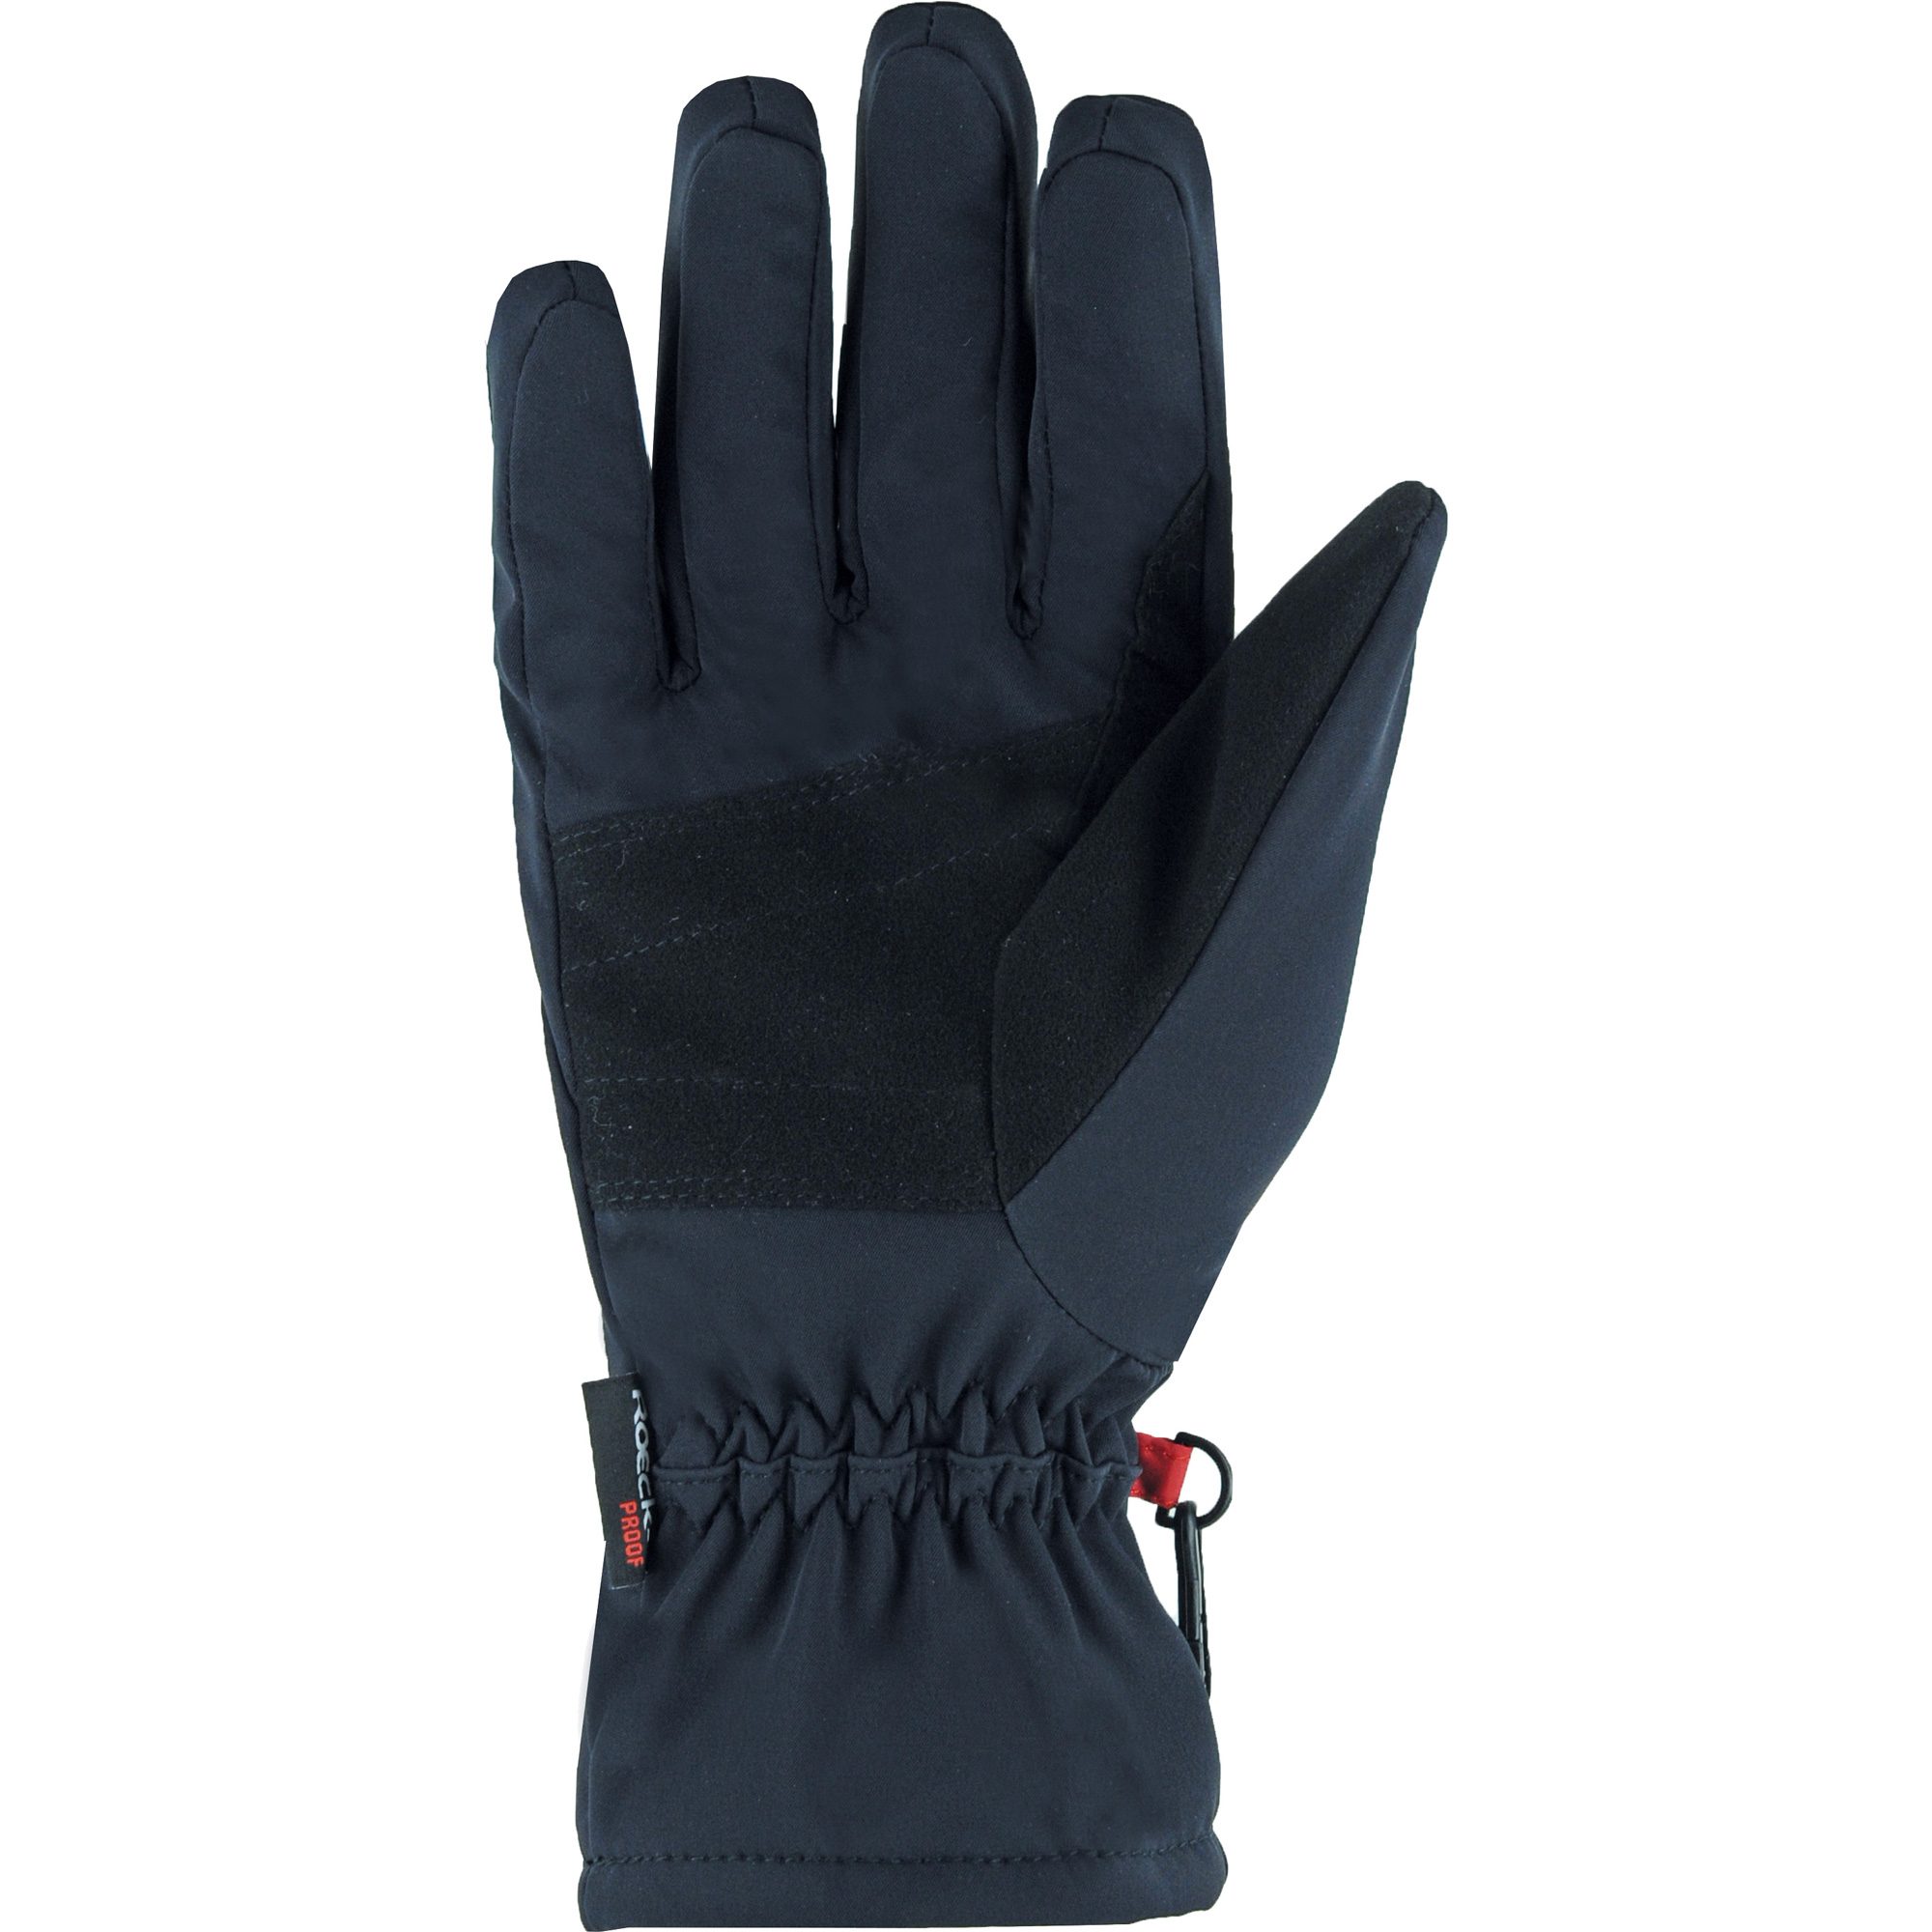 Roeckl Sports - RP Softshell Handschuhe schwarz kaufen im Sport Bittl Shop